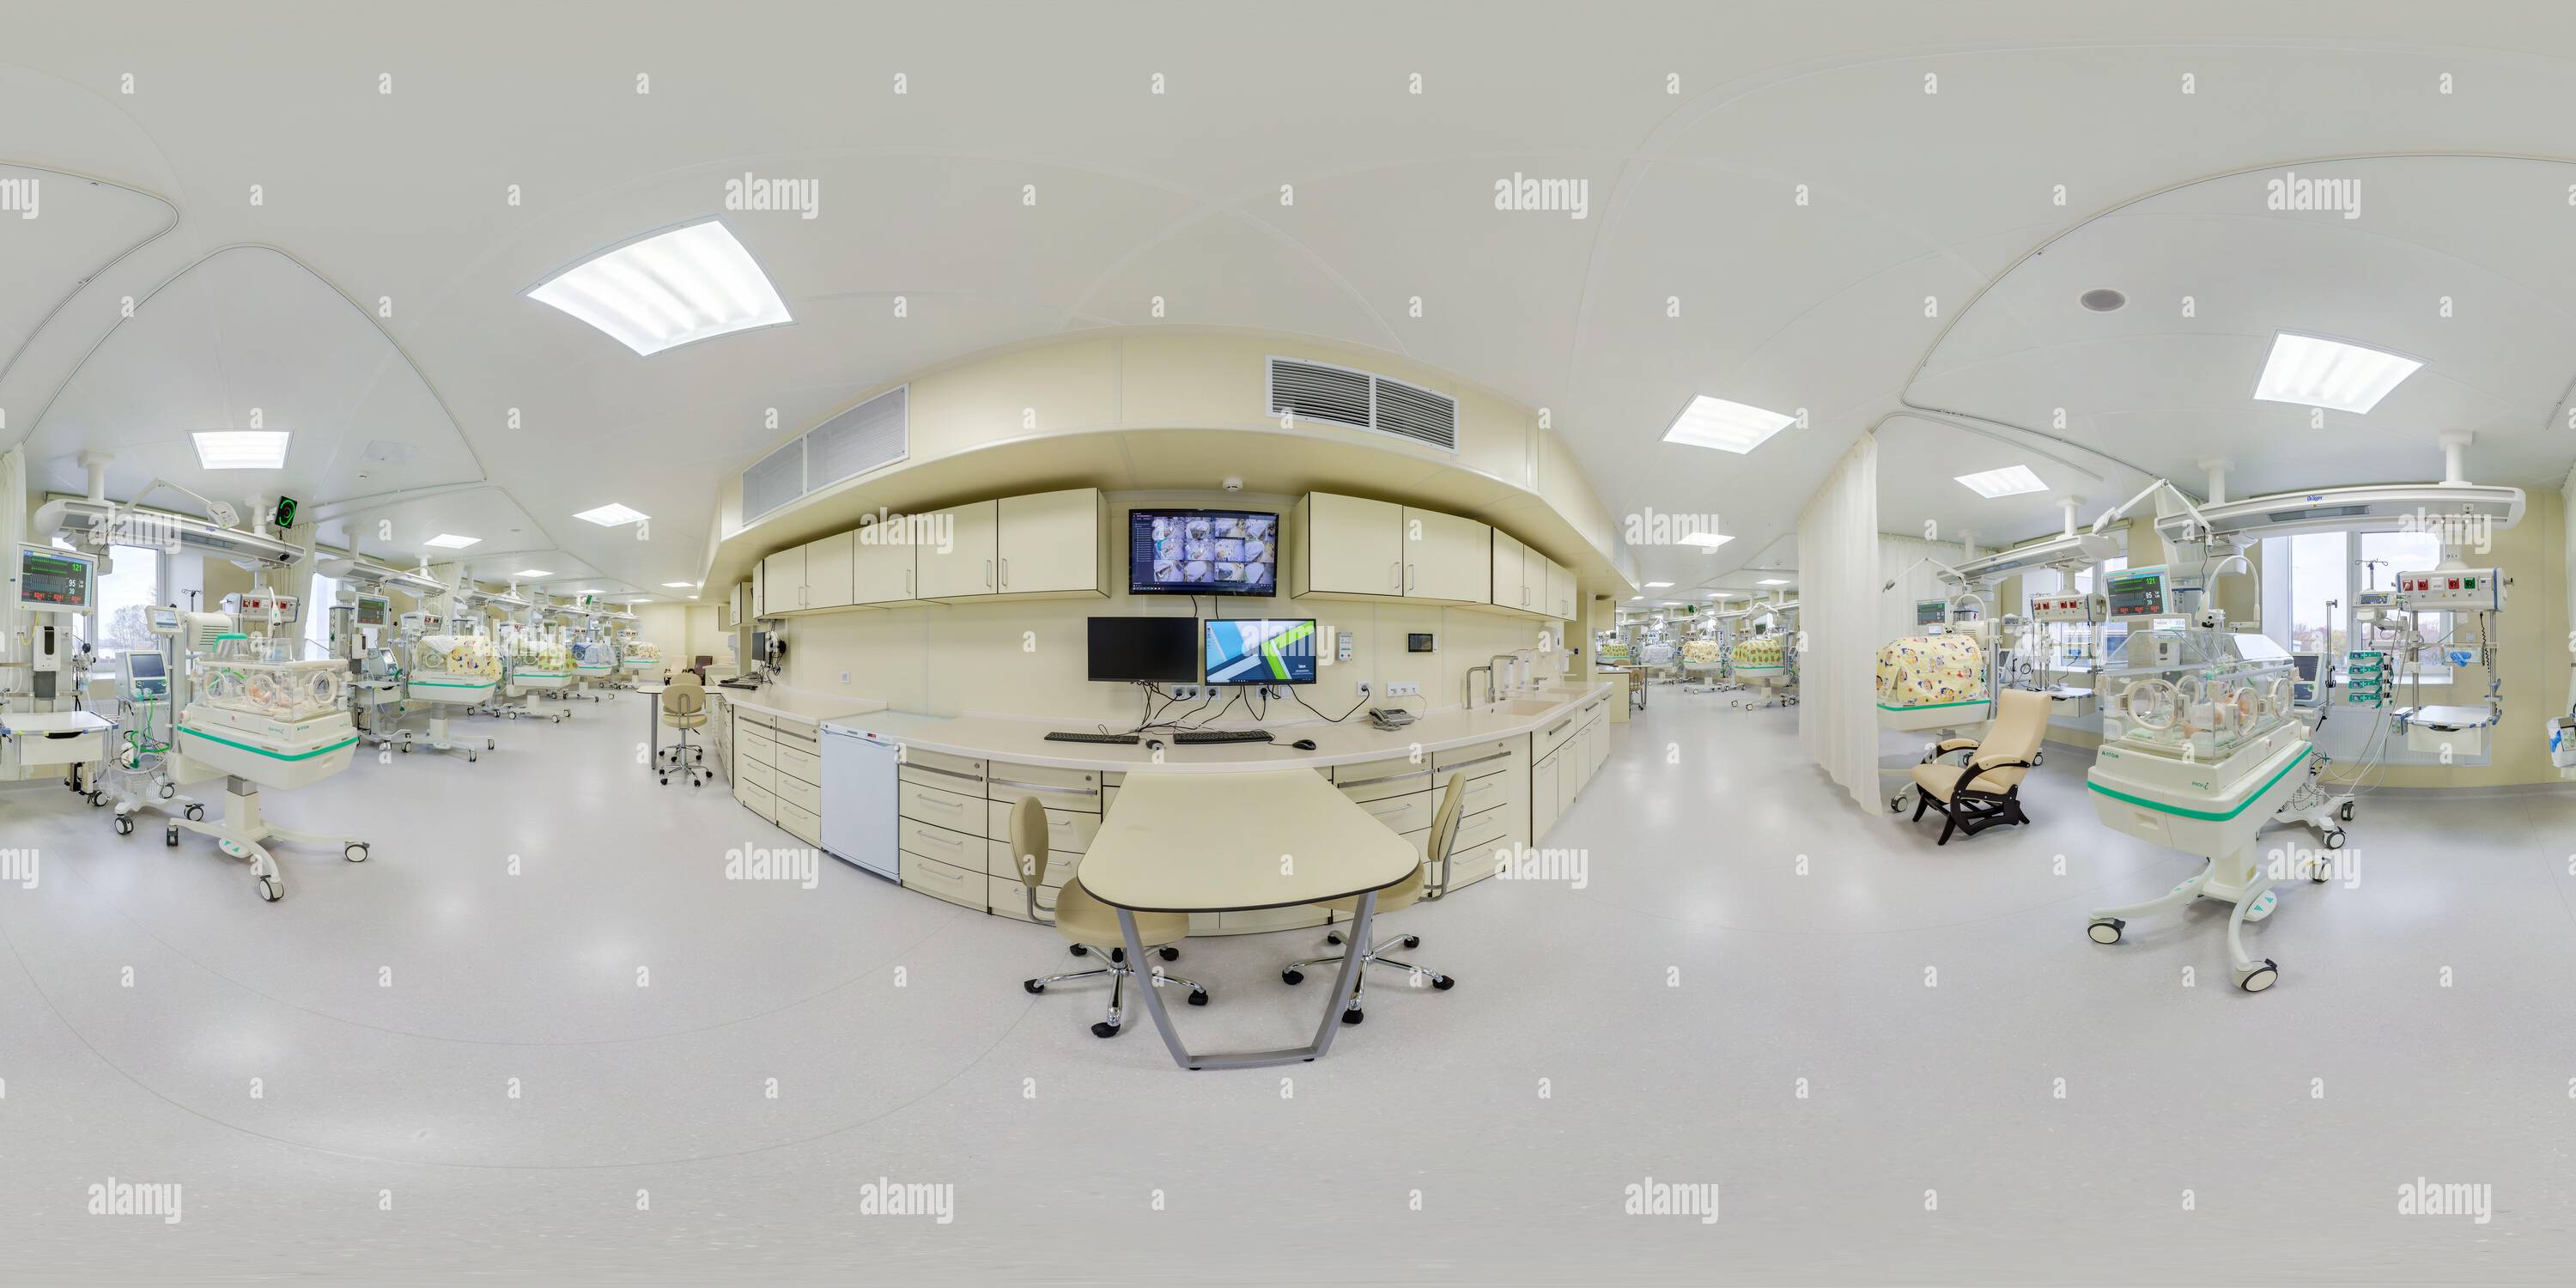 Visualizzazione panoramica a 360 gradi di MOSCA, RUSSIA - GIUGNO 2022: Panorama completo hdri 360 vicino al box incubatore infantile nel reparto maternità dell'ospedale del centro medico con attrezzature moderne in den